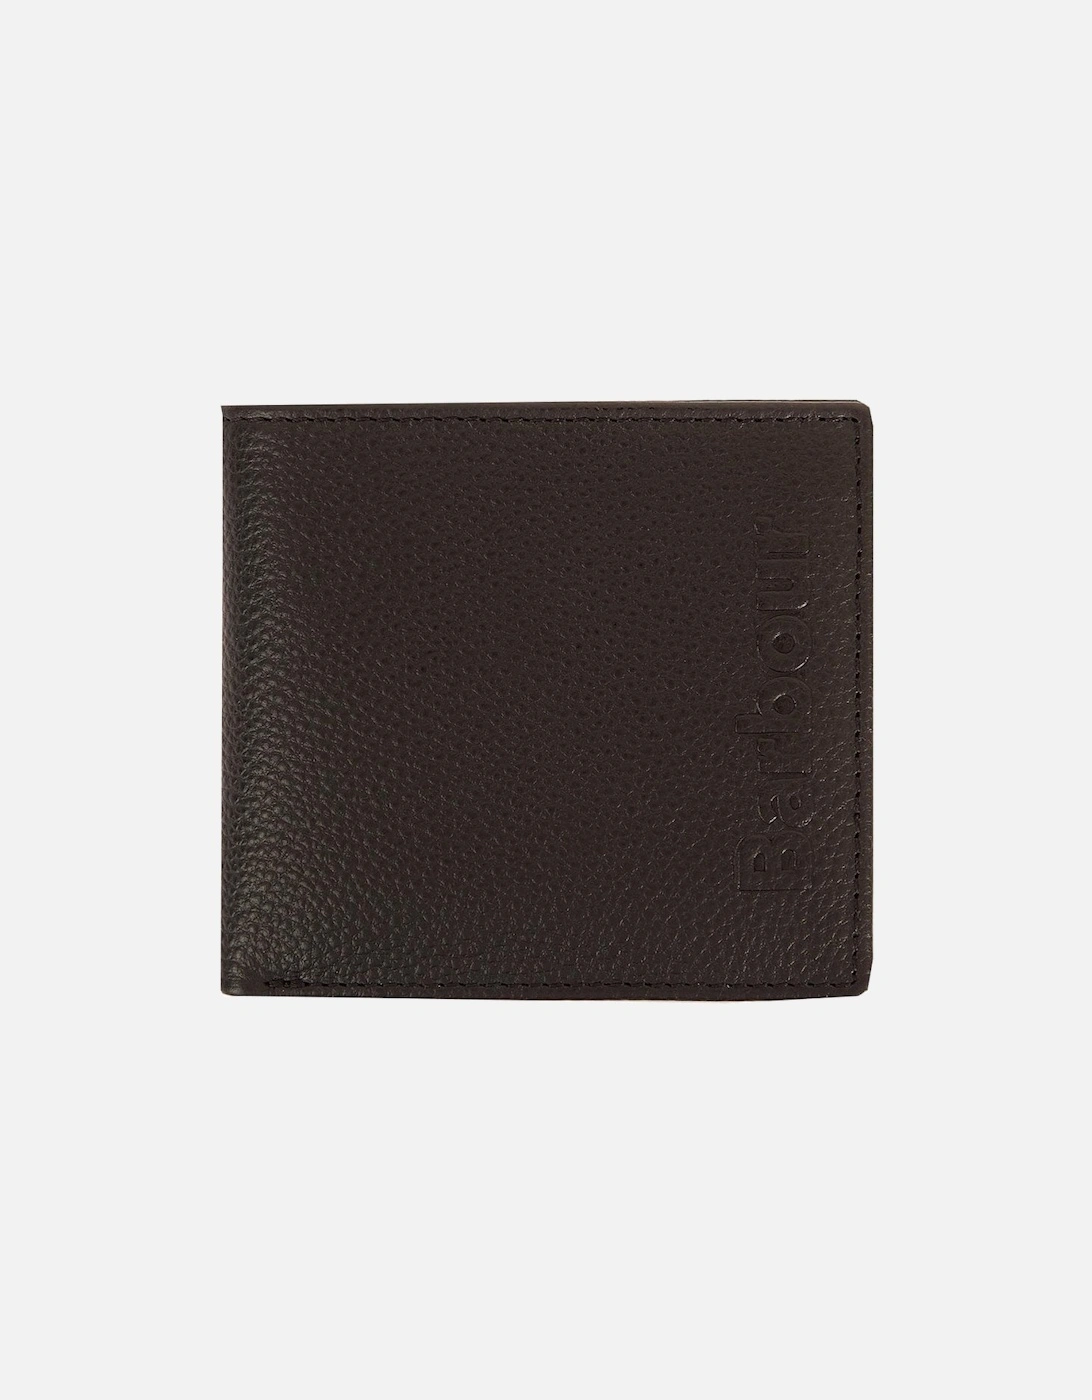 Barbour Black Debossed Logo Wallet In Gift Box, 5 of 4